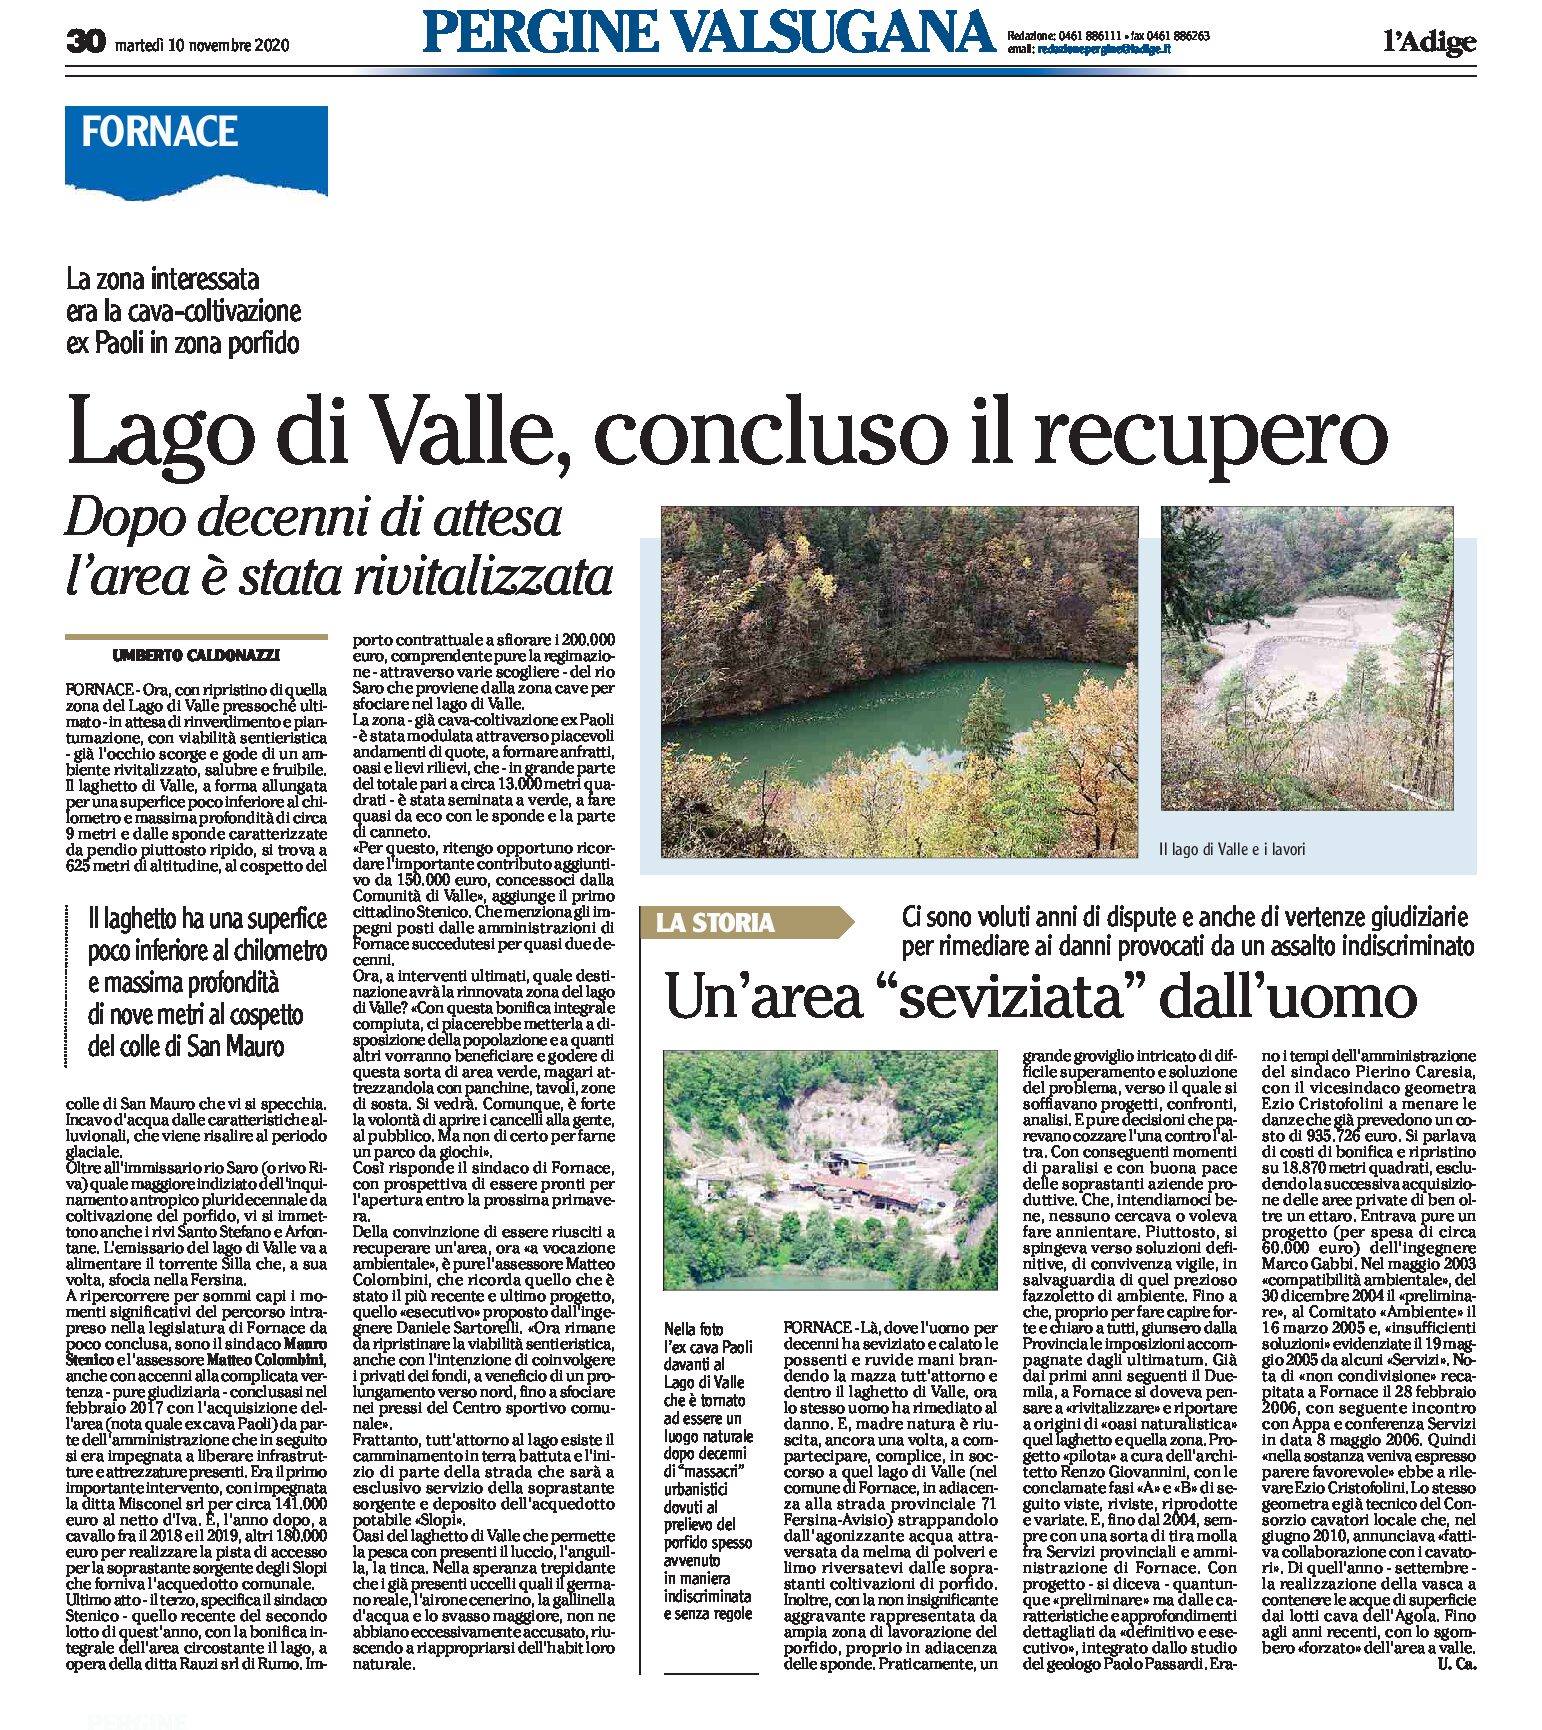 Fornace, ex cava Paoli: lago di Valle, concluso il recupero. Dopo anni di attesa